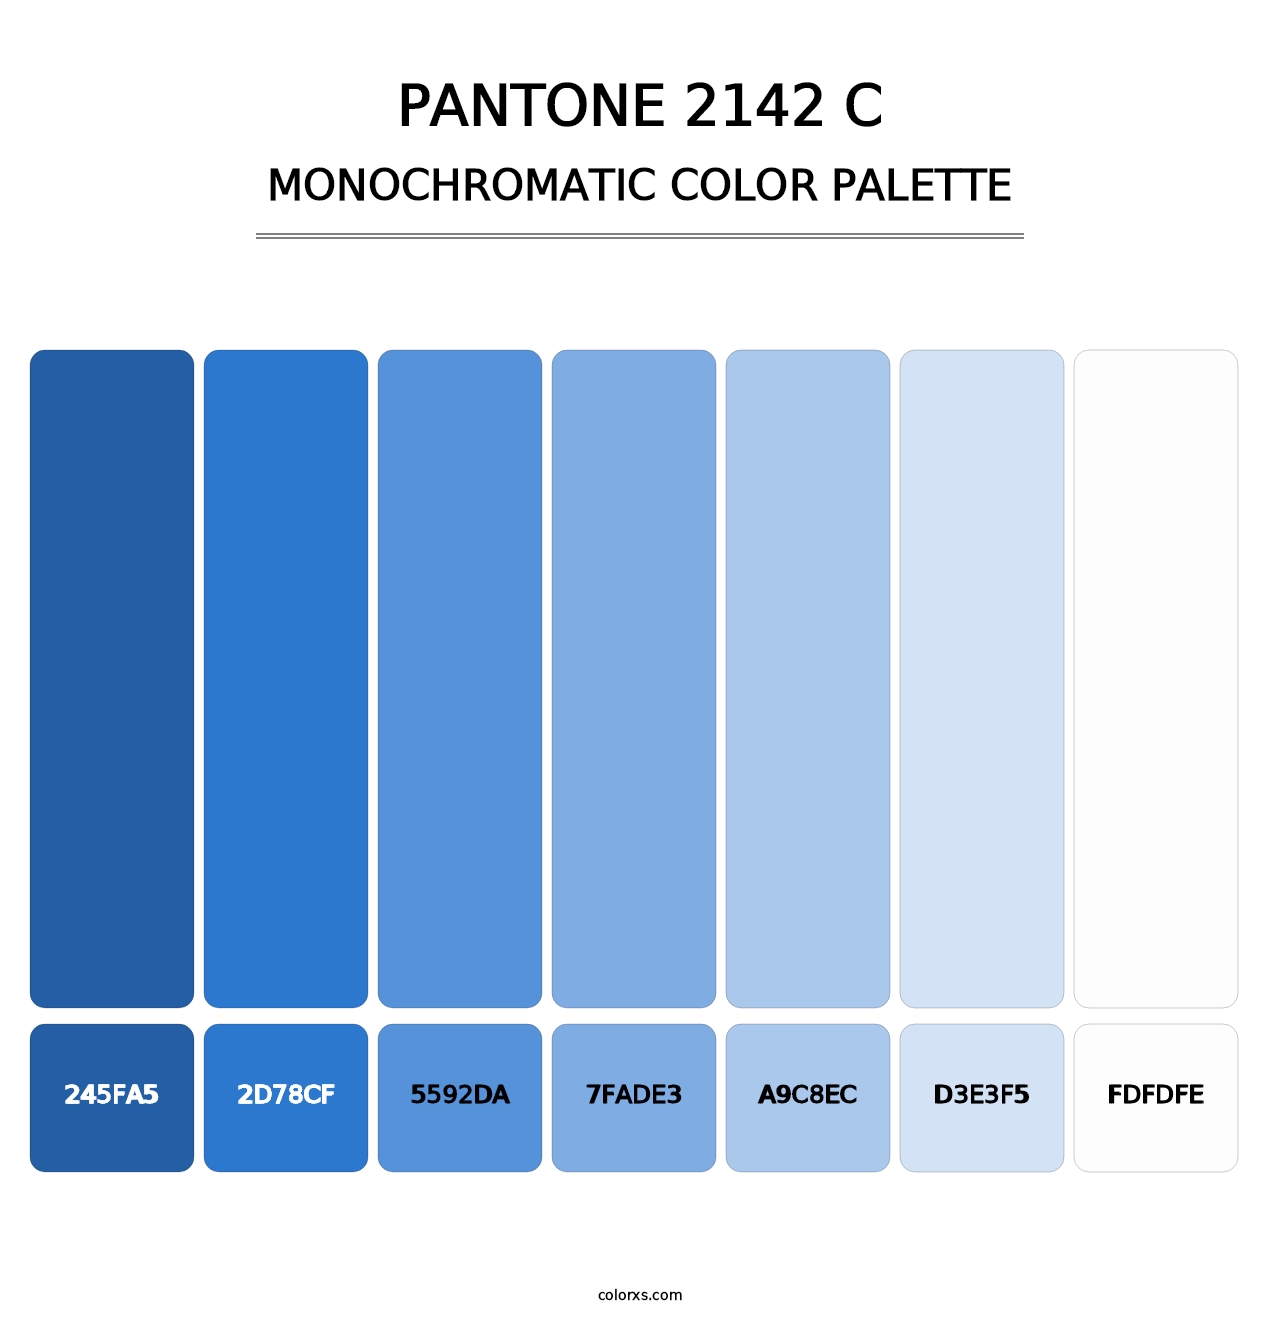 PANTONE 2142 C - Monochromatic Color Palette